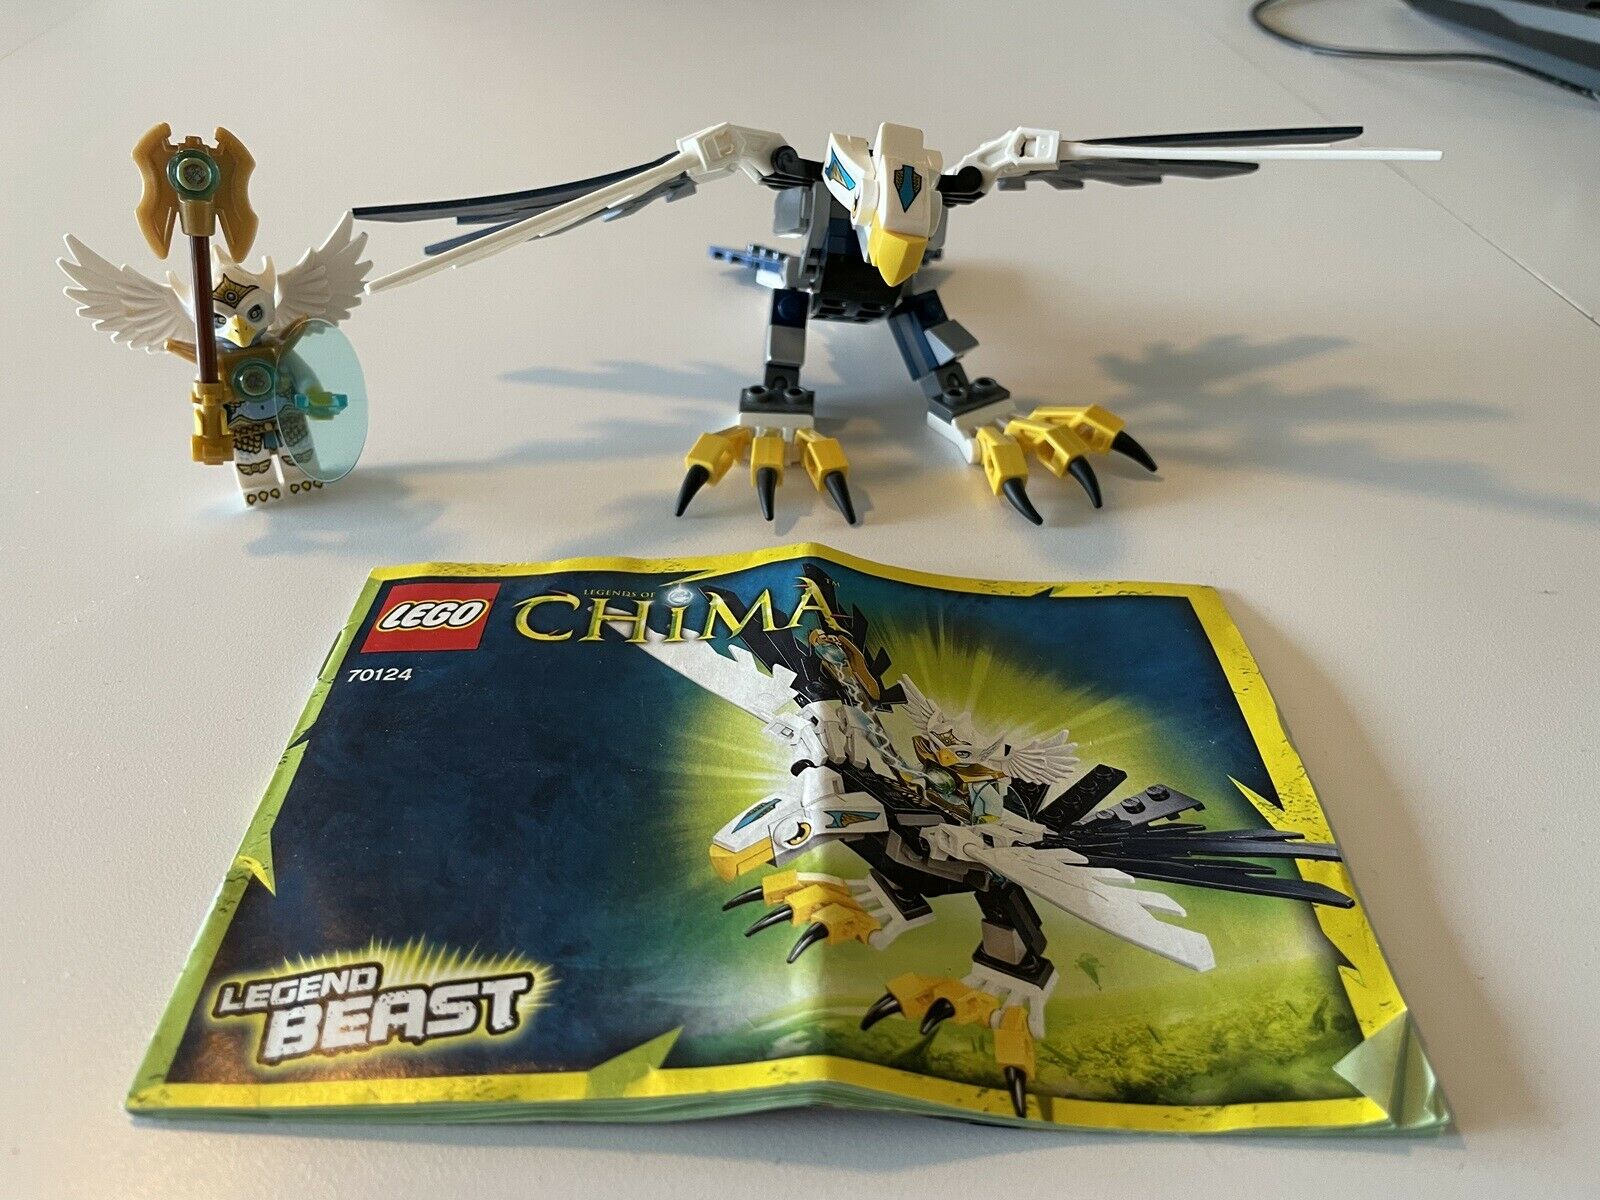 Mug jeg er glad sikkerhed Lego andet, Lego Chima #70124 – dba.dk – Køb og Salg af Nyt og Brugt